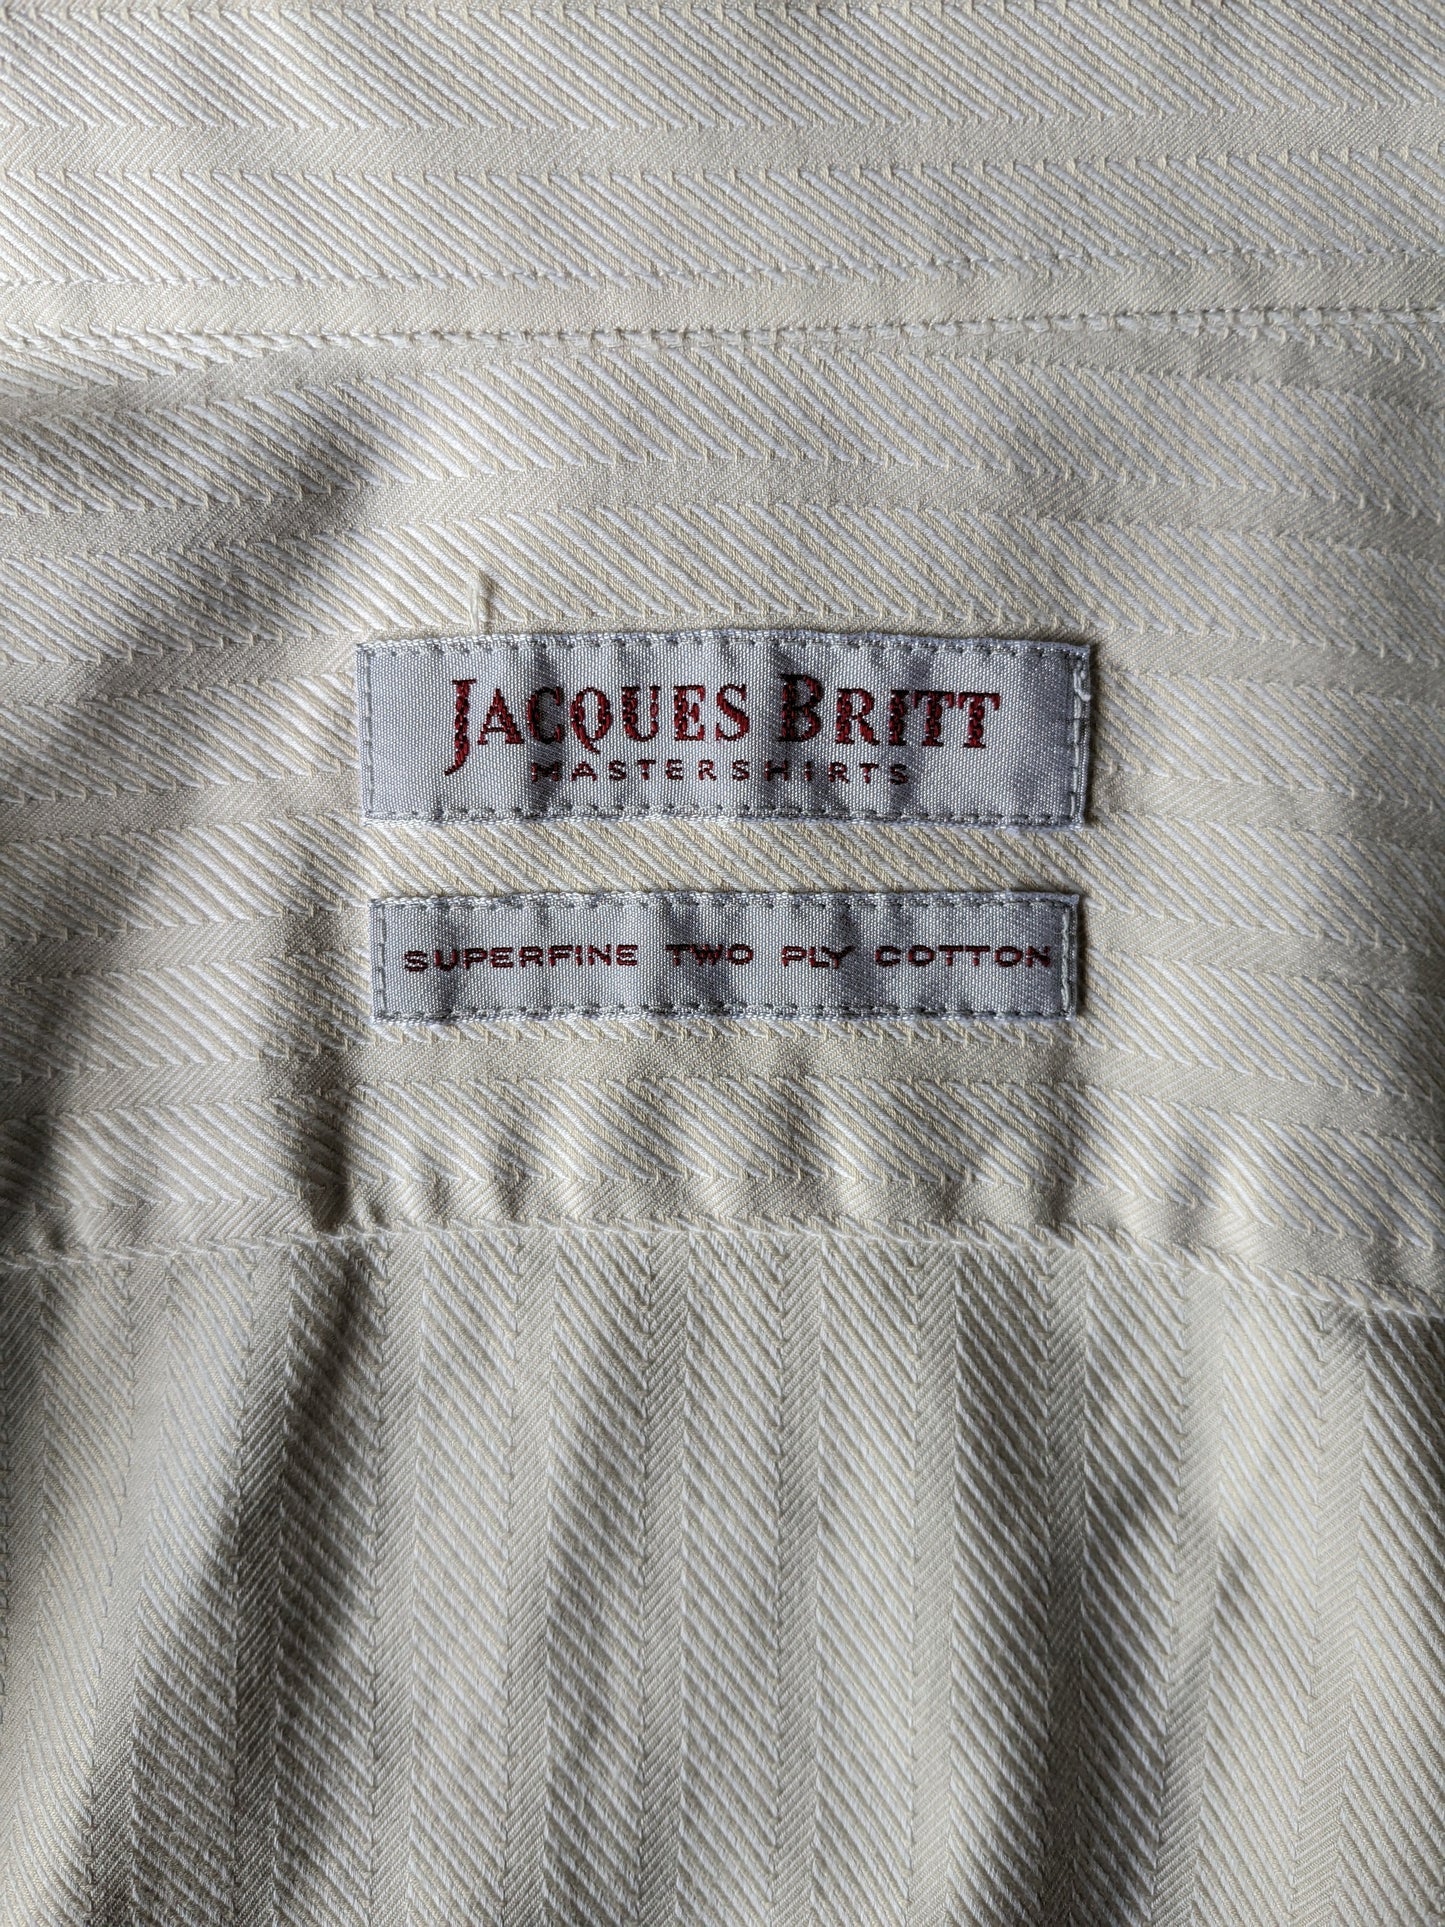 Vintage Jacques Britt overhemd. Beige gestreept motief. Maat XL.